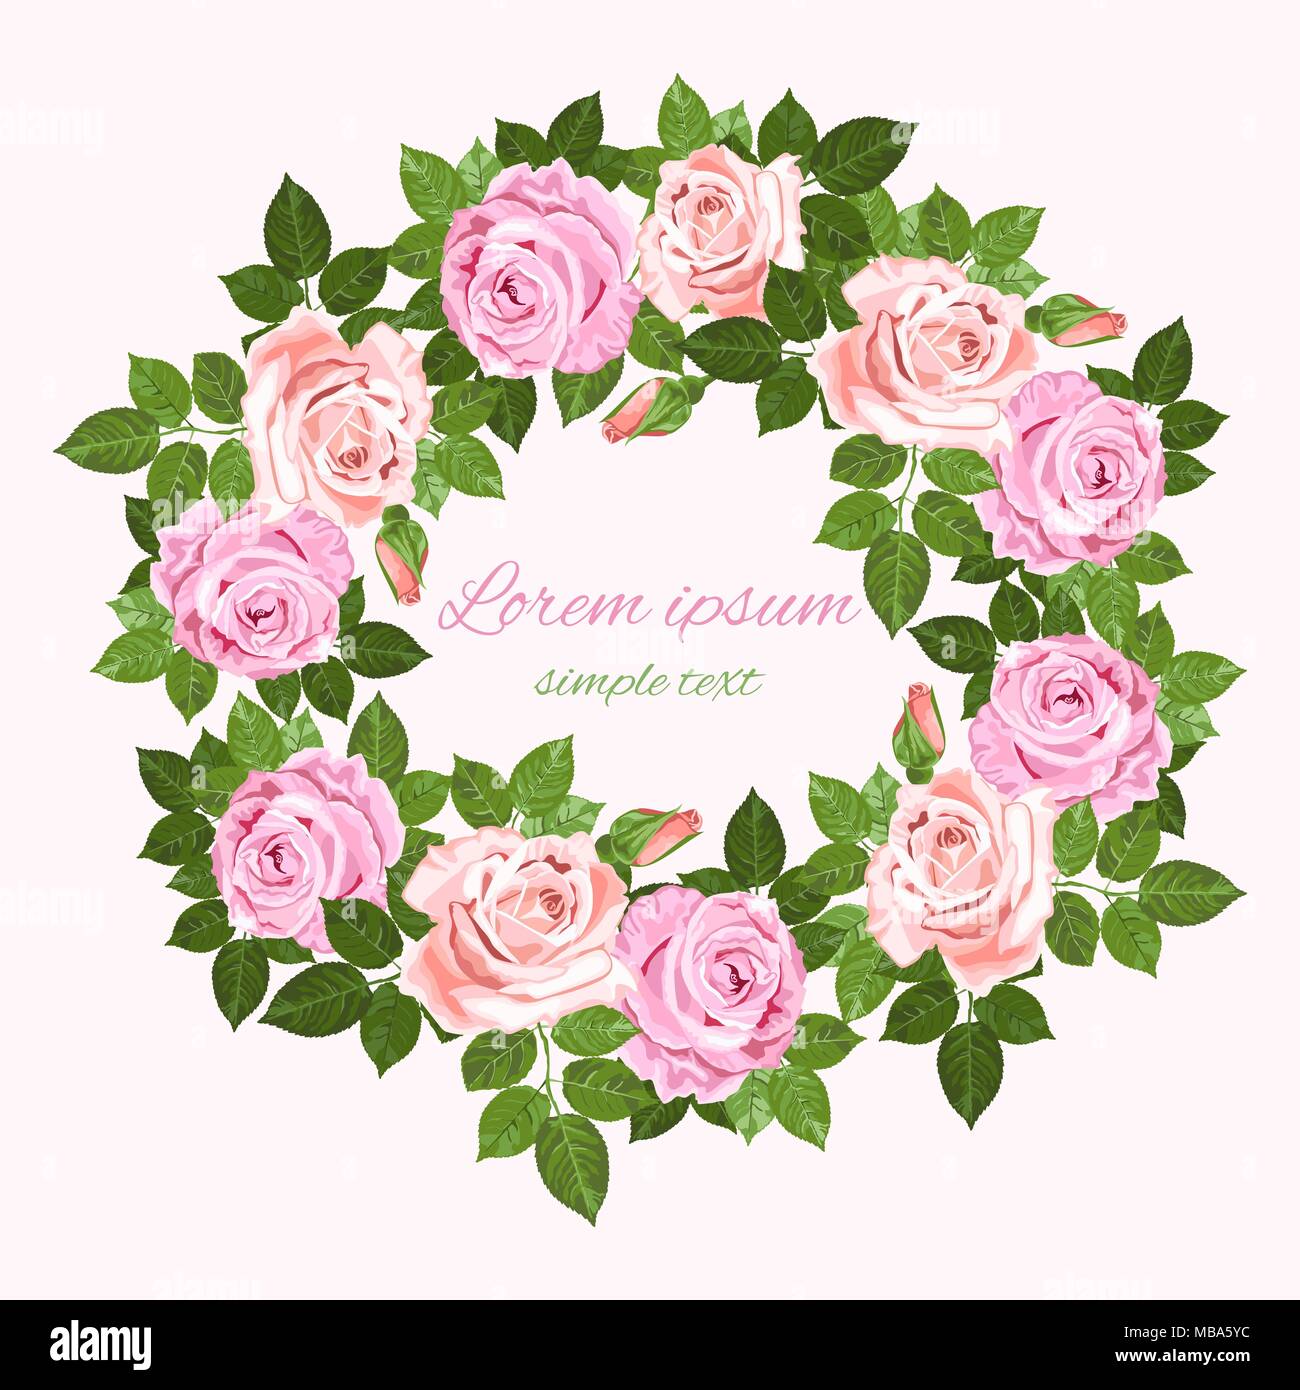 Vector save the date invitations de mariage rose et beige avec couronne de roses sur fond blanc. Floral design pour carte de souhaits Illustration de Vecteur